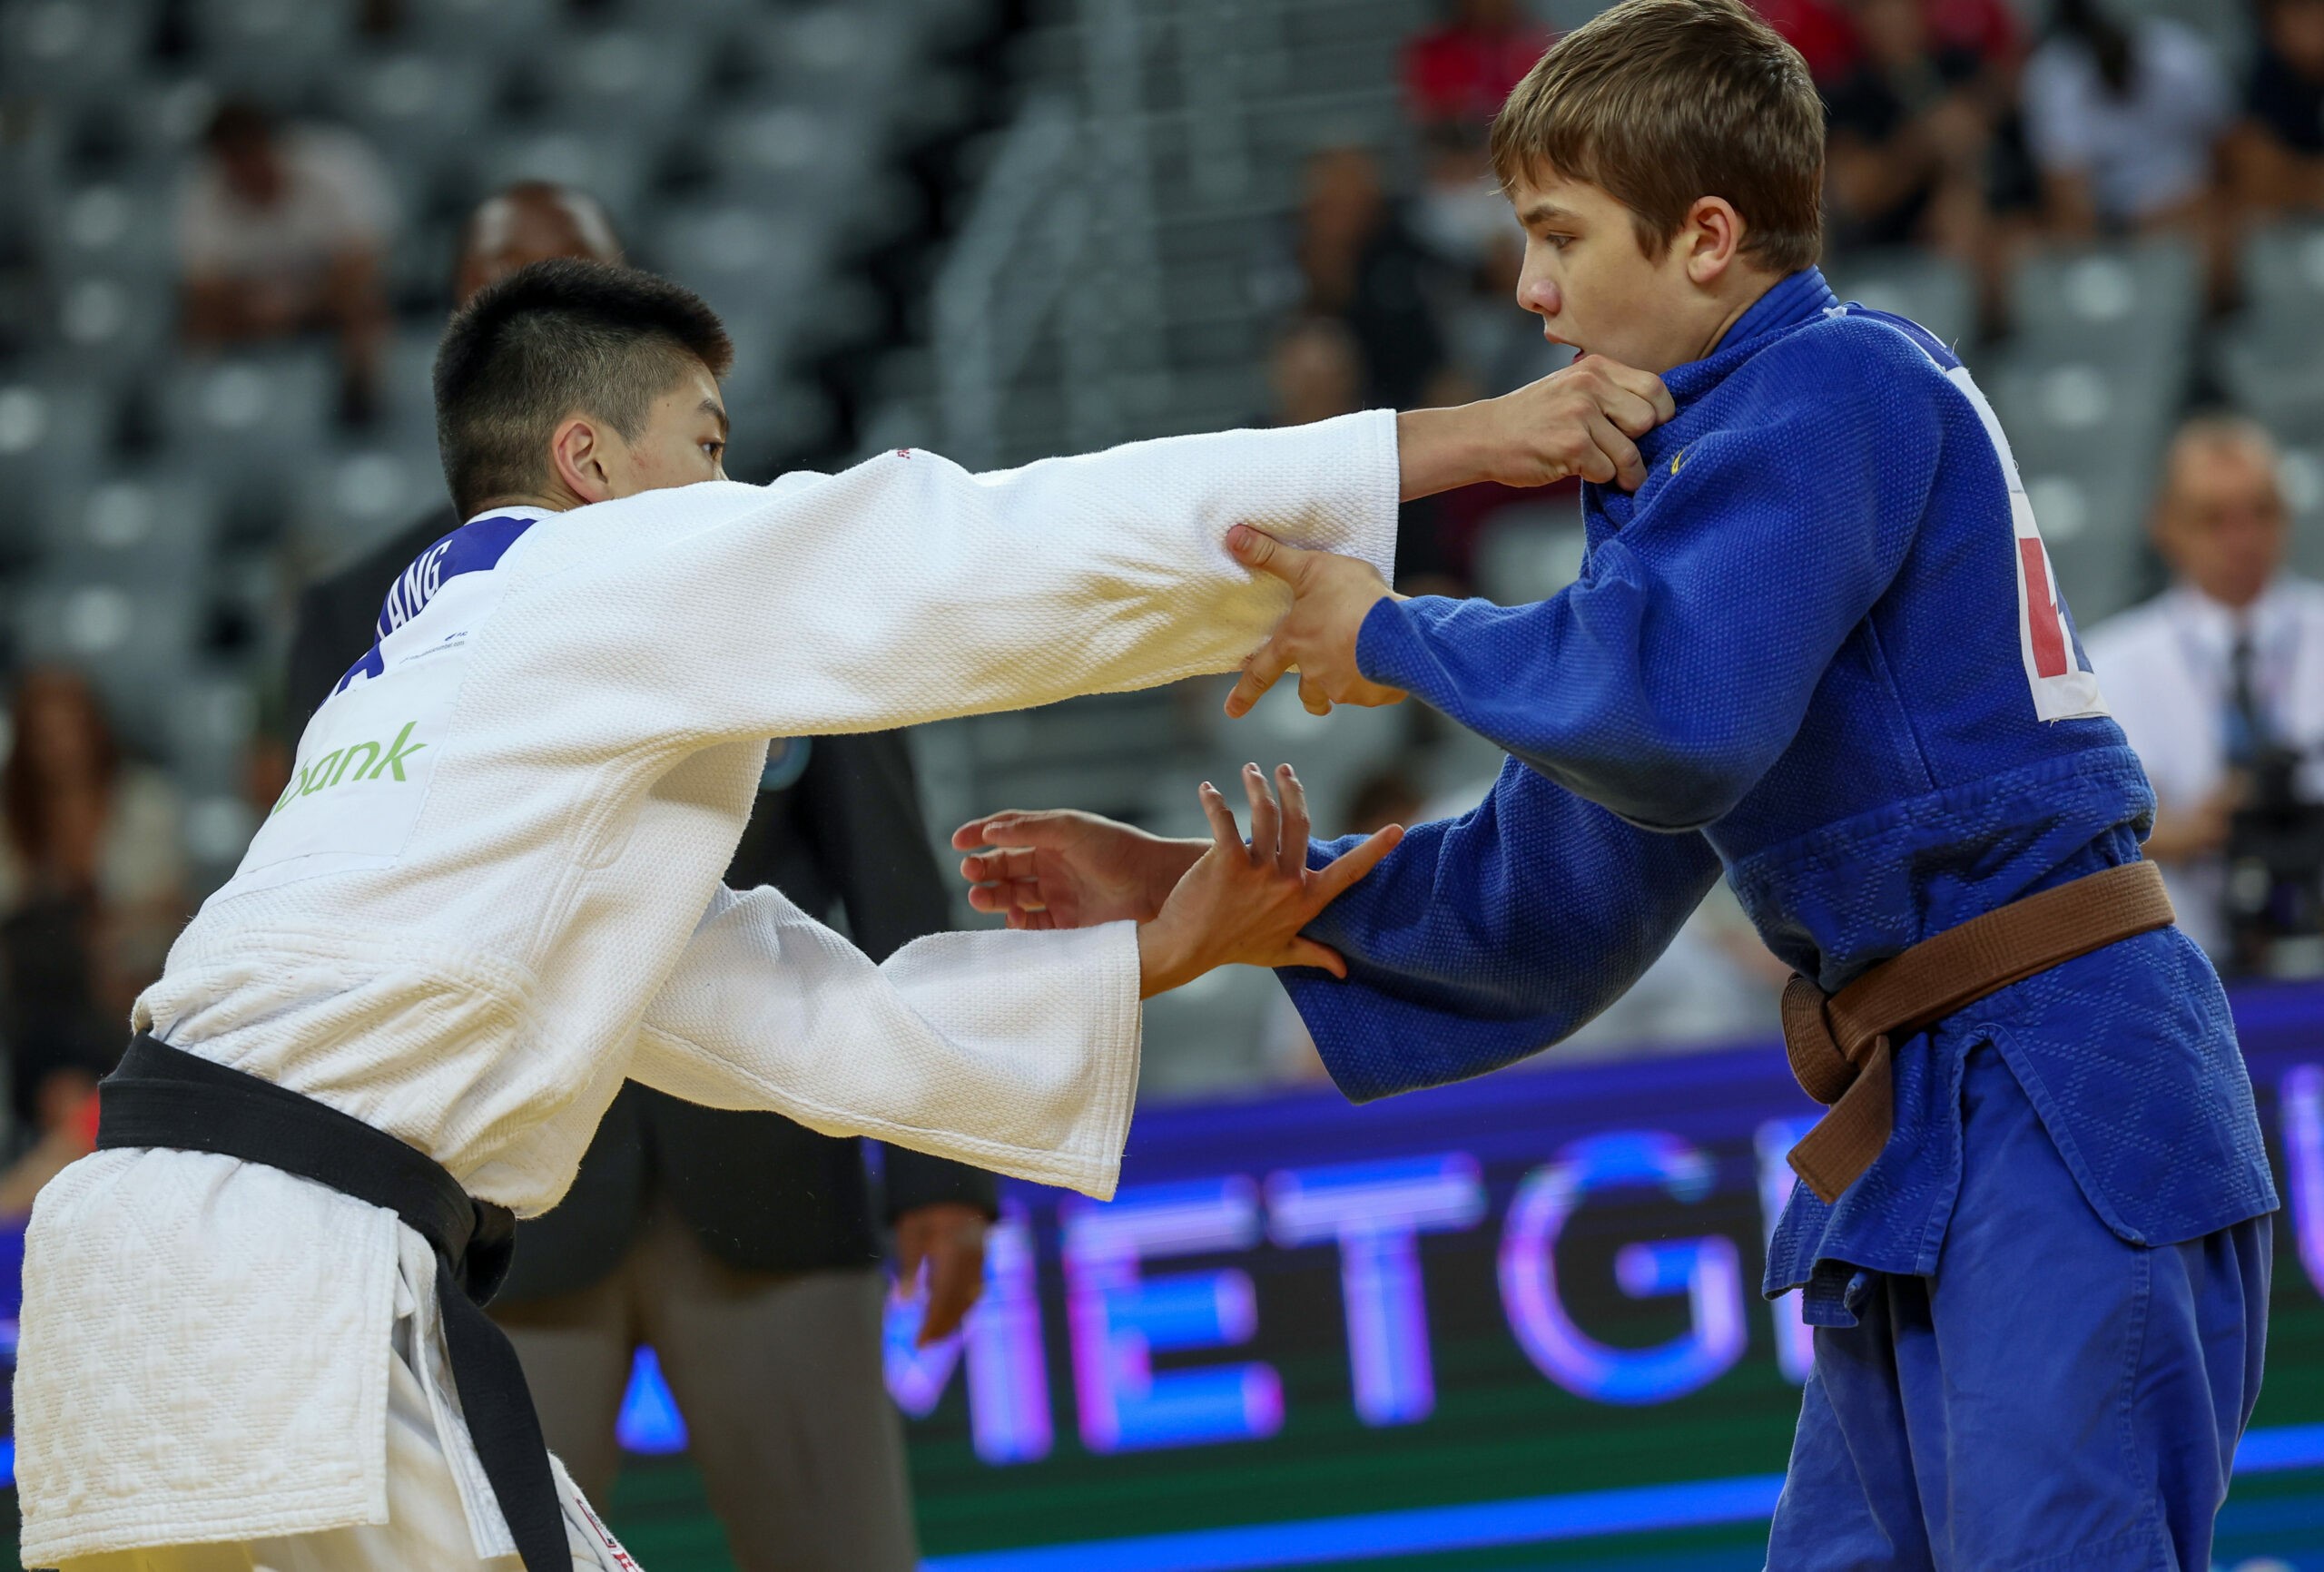 USA Judo Jonathan Yang Earns Seventh Place Finish at Cadet World Championship Debut